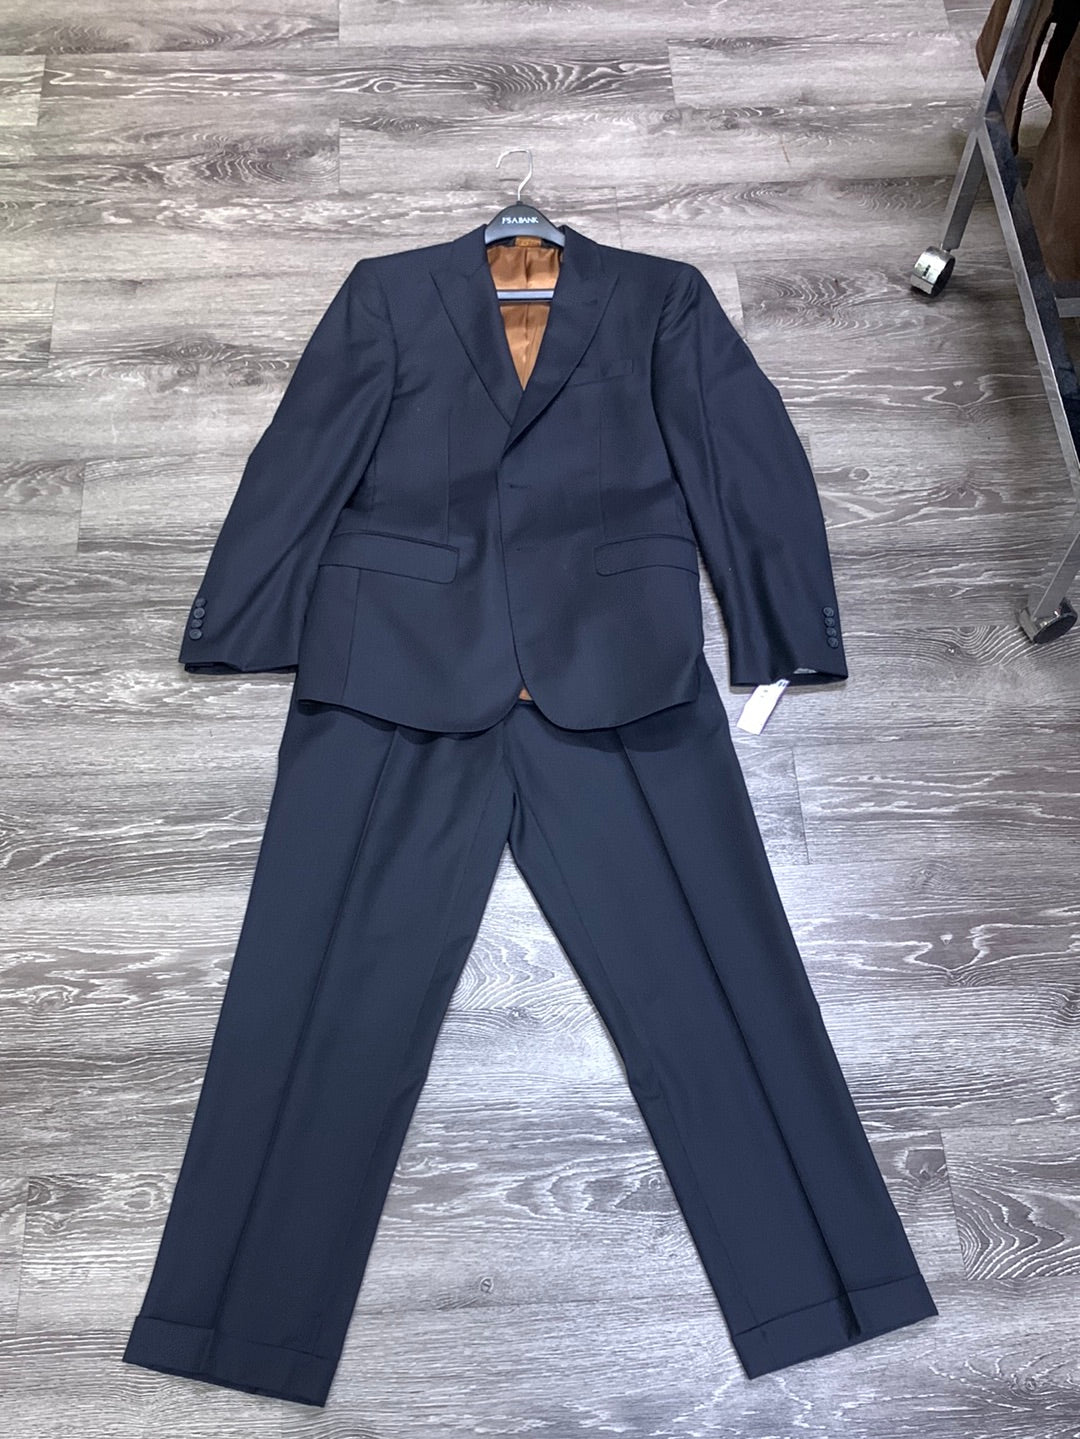 Jos A Banks Classic 2 Piece Suit - size 38R